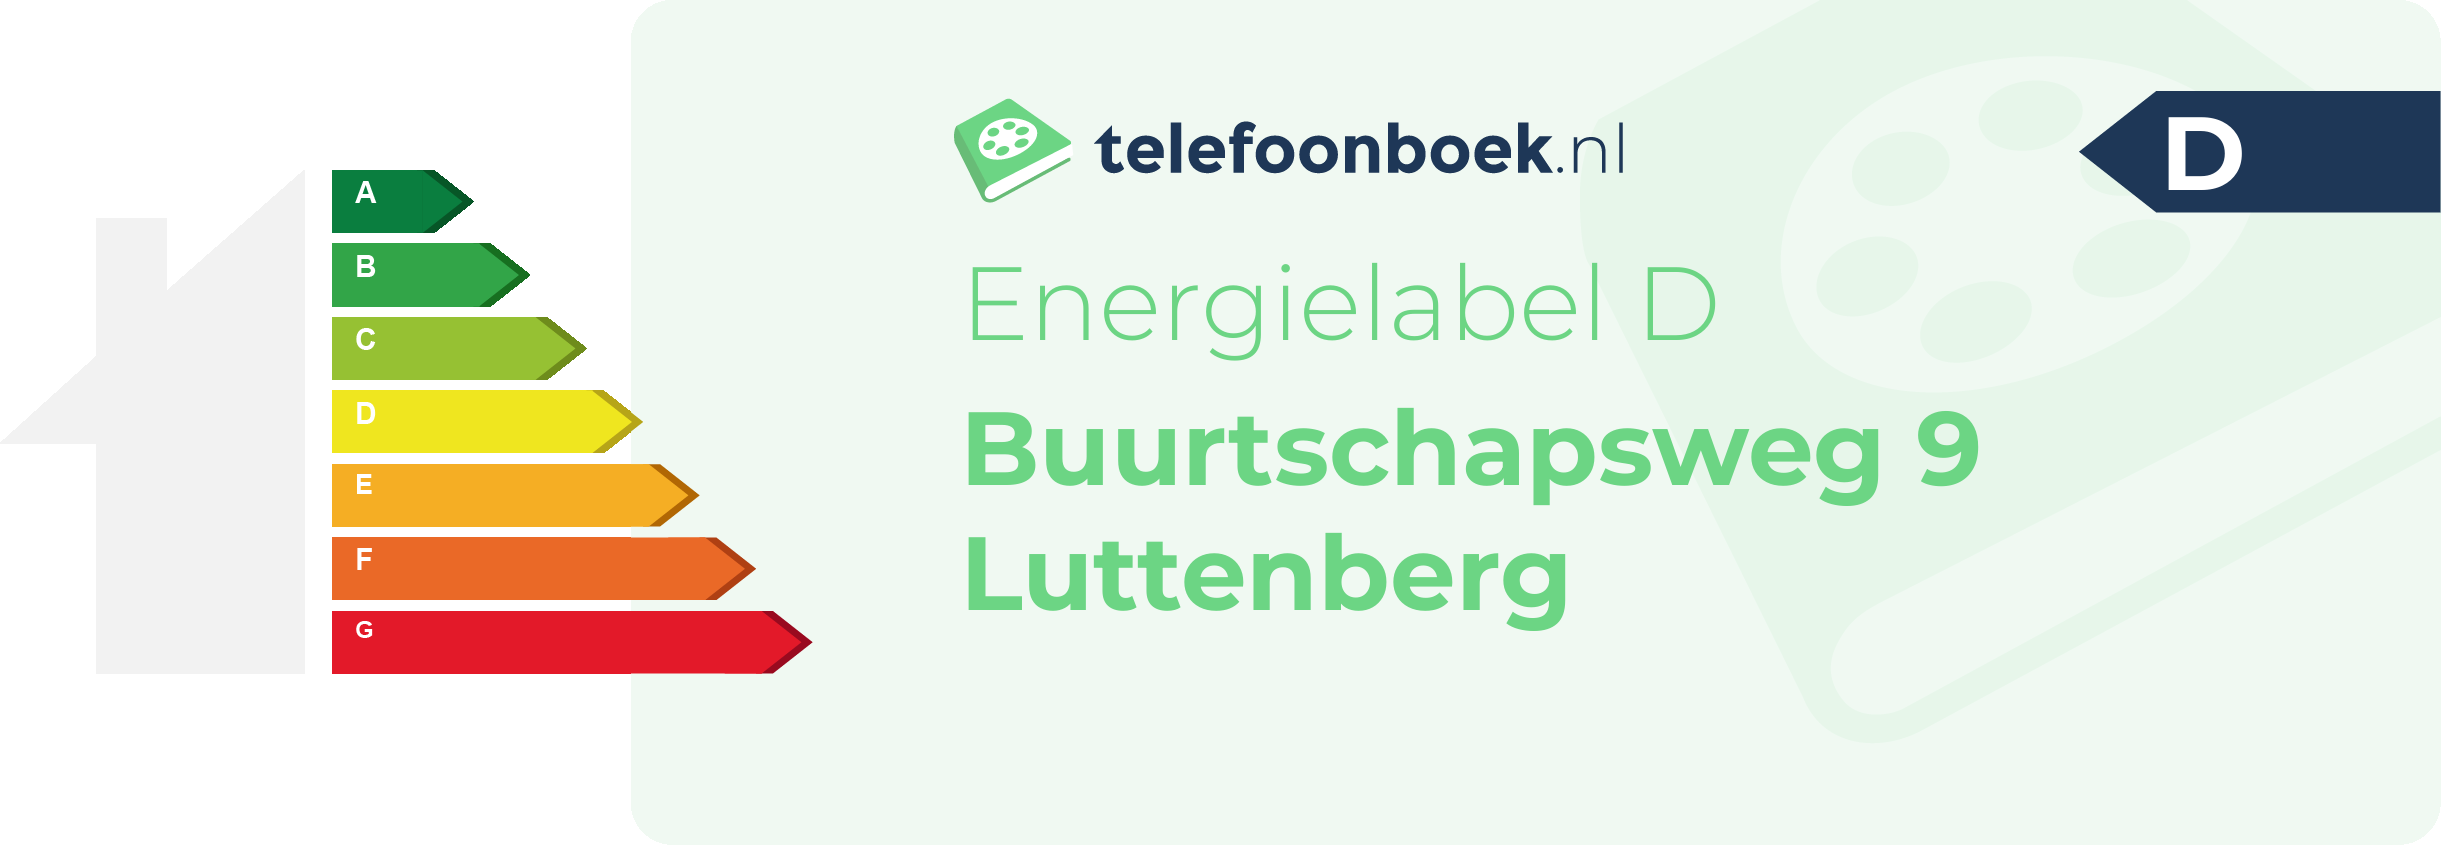 Energielabel Buurtschapsweg 9 Luttenberg